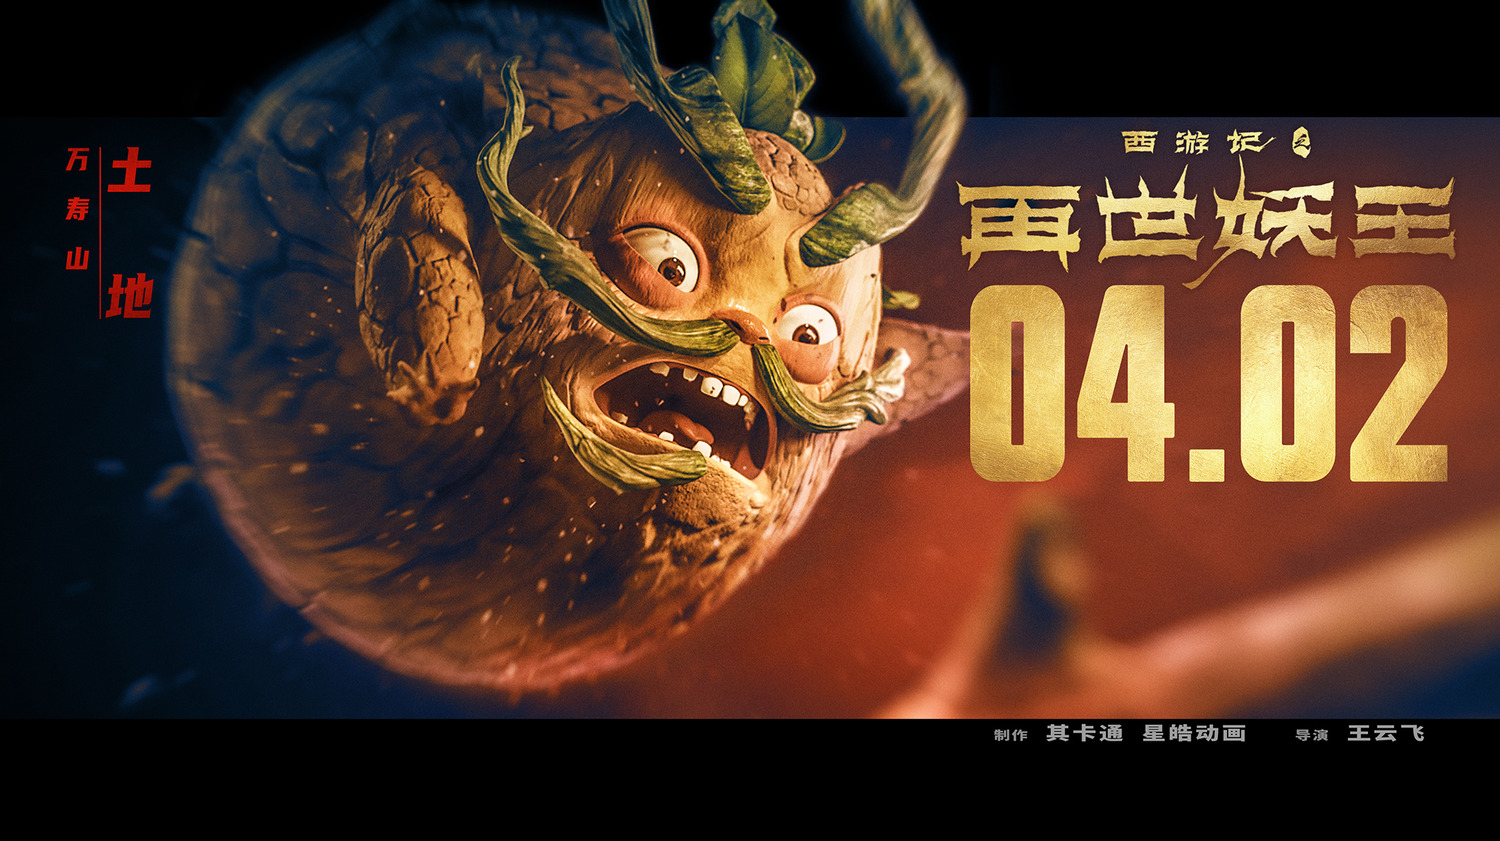 Extra Large Movie Poster Image for Xi You Ji Zhi Zai Shi Yao Wang (#7 of 21)